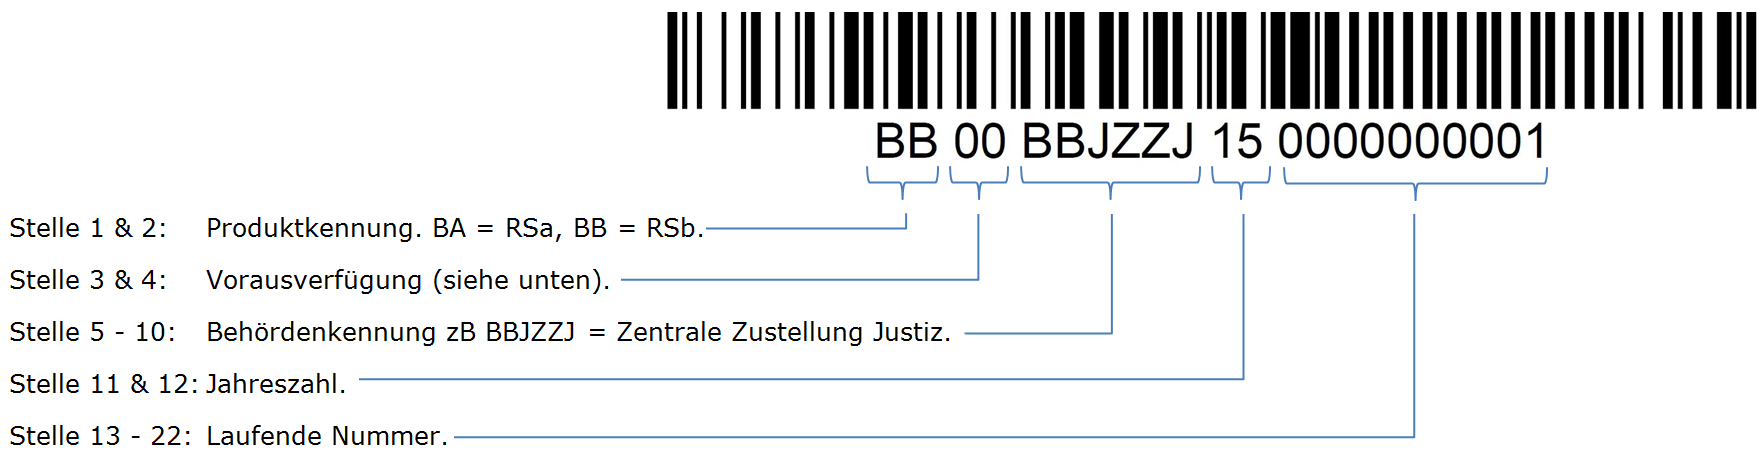 Barcode-ID